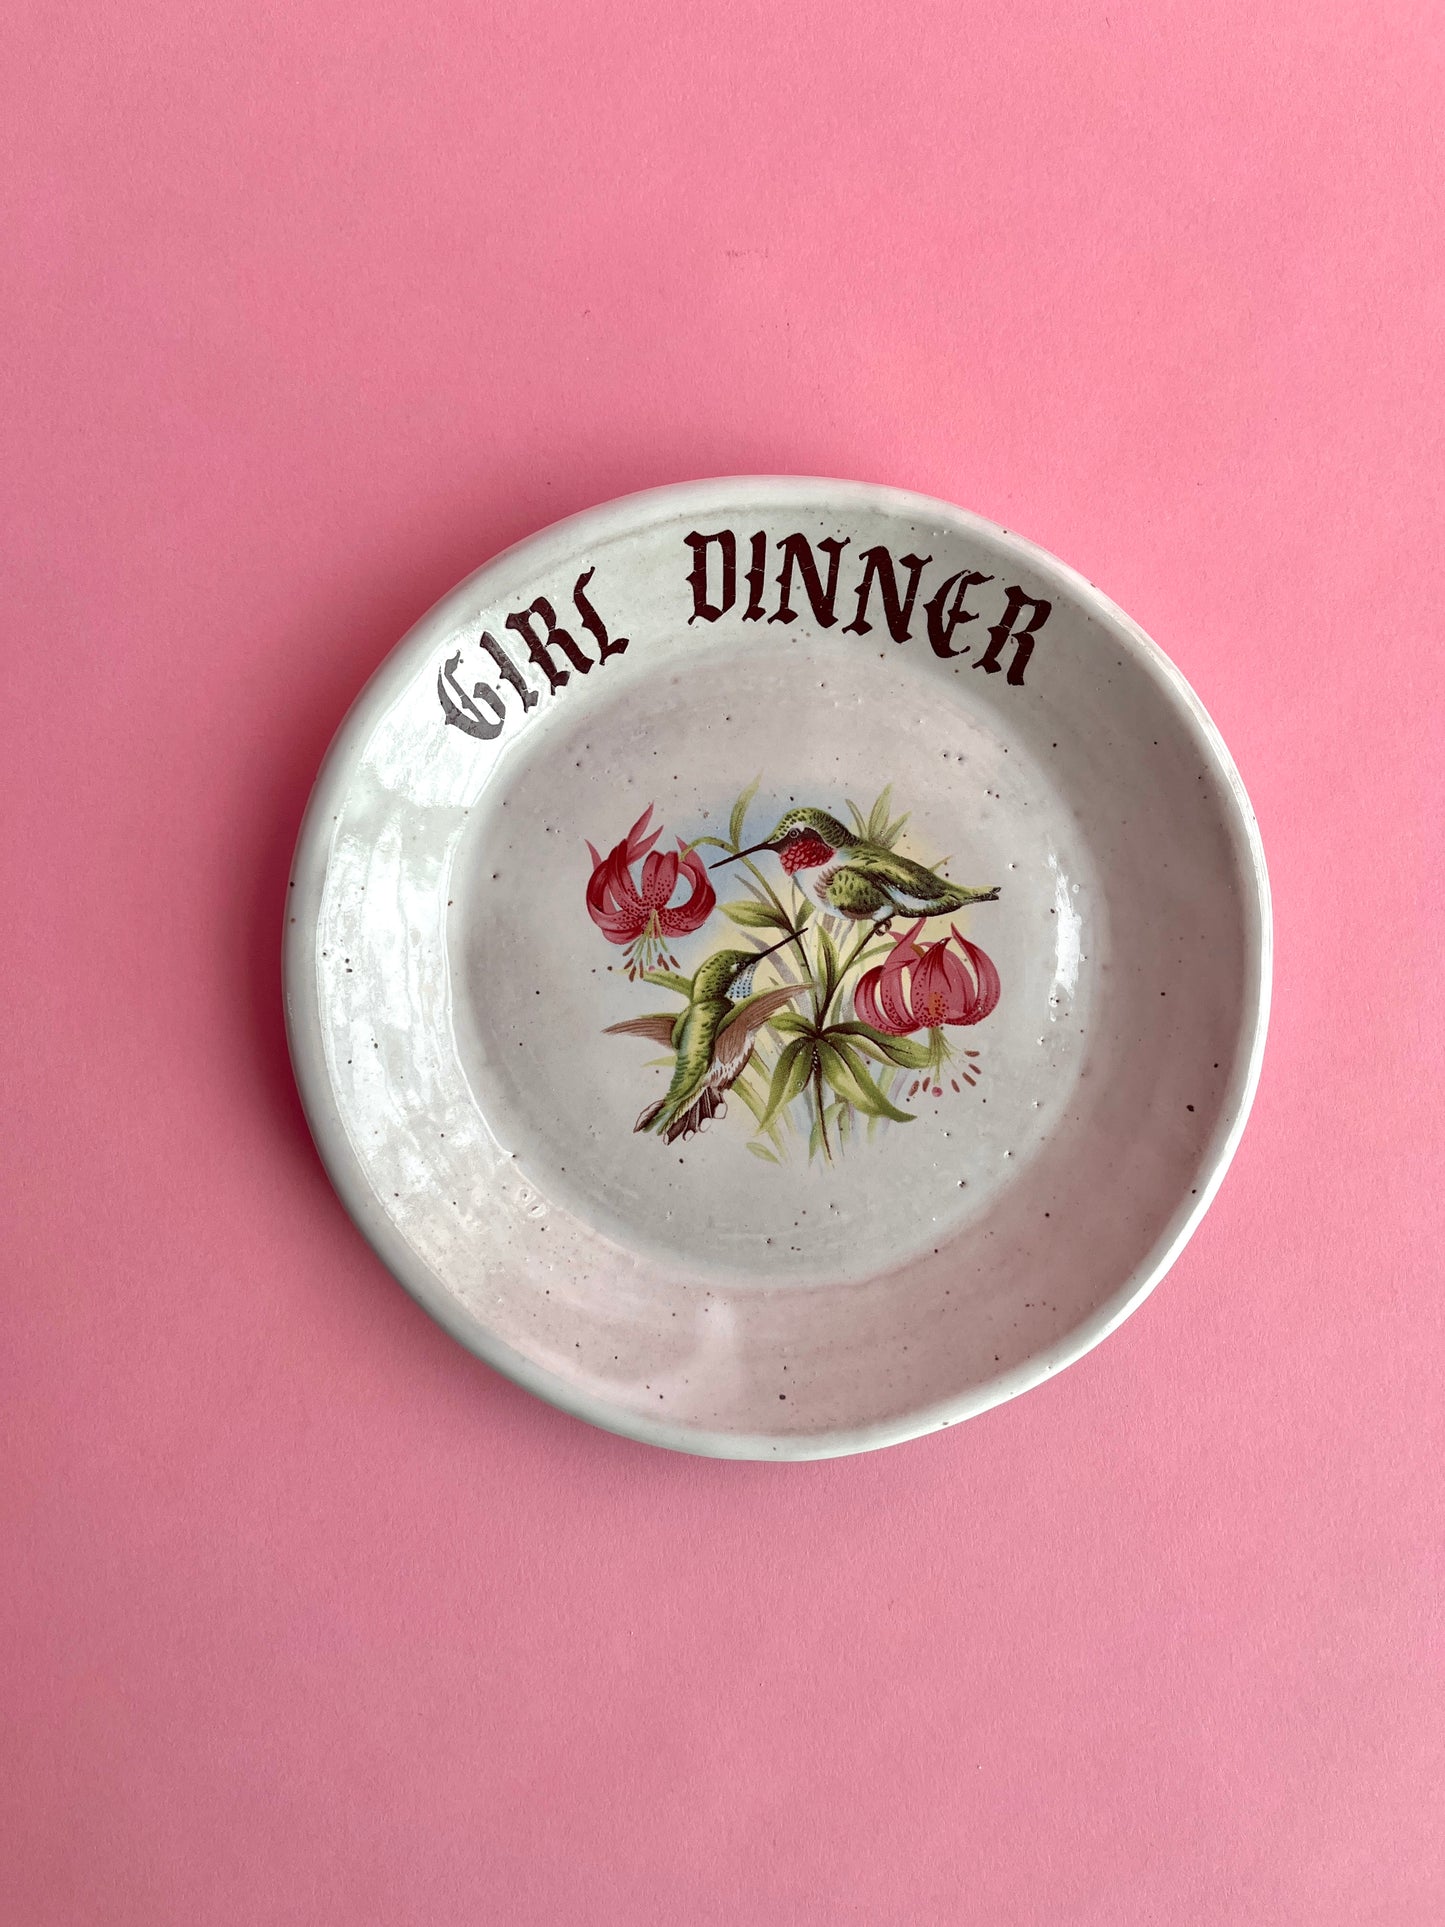 Girl Dinner Dishes